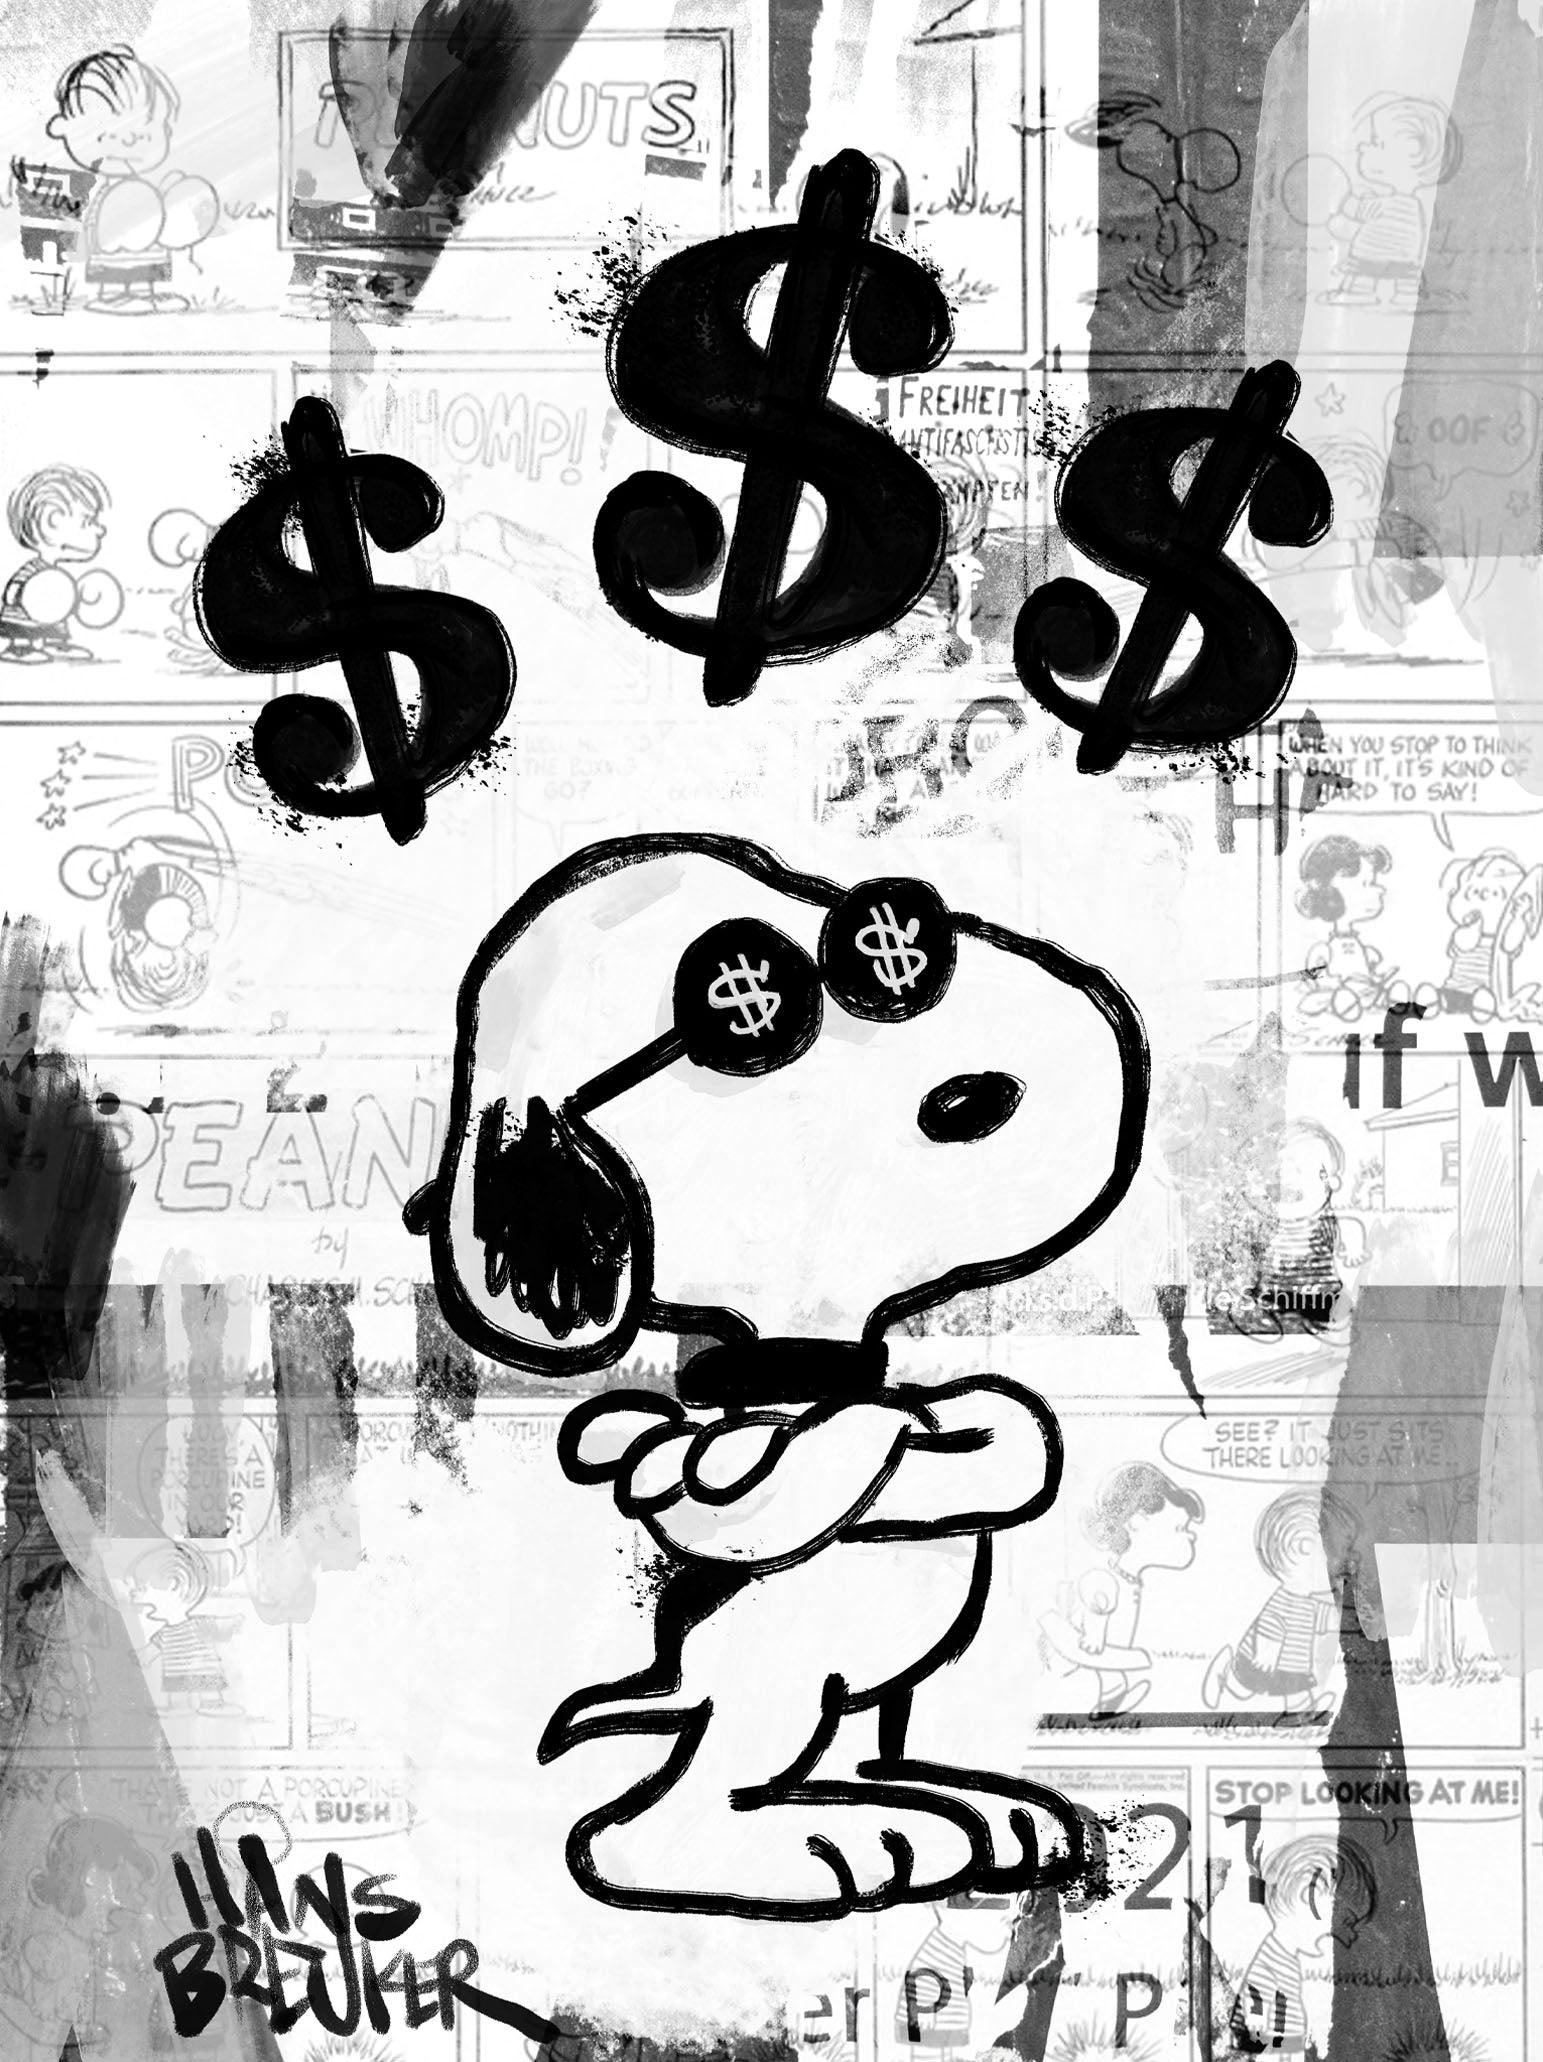 Dollar boss Snoopy - Hans Breuker